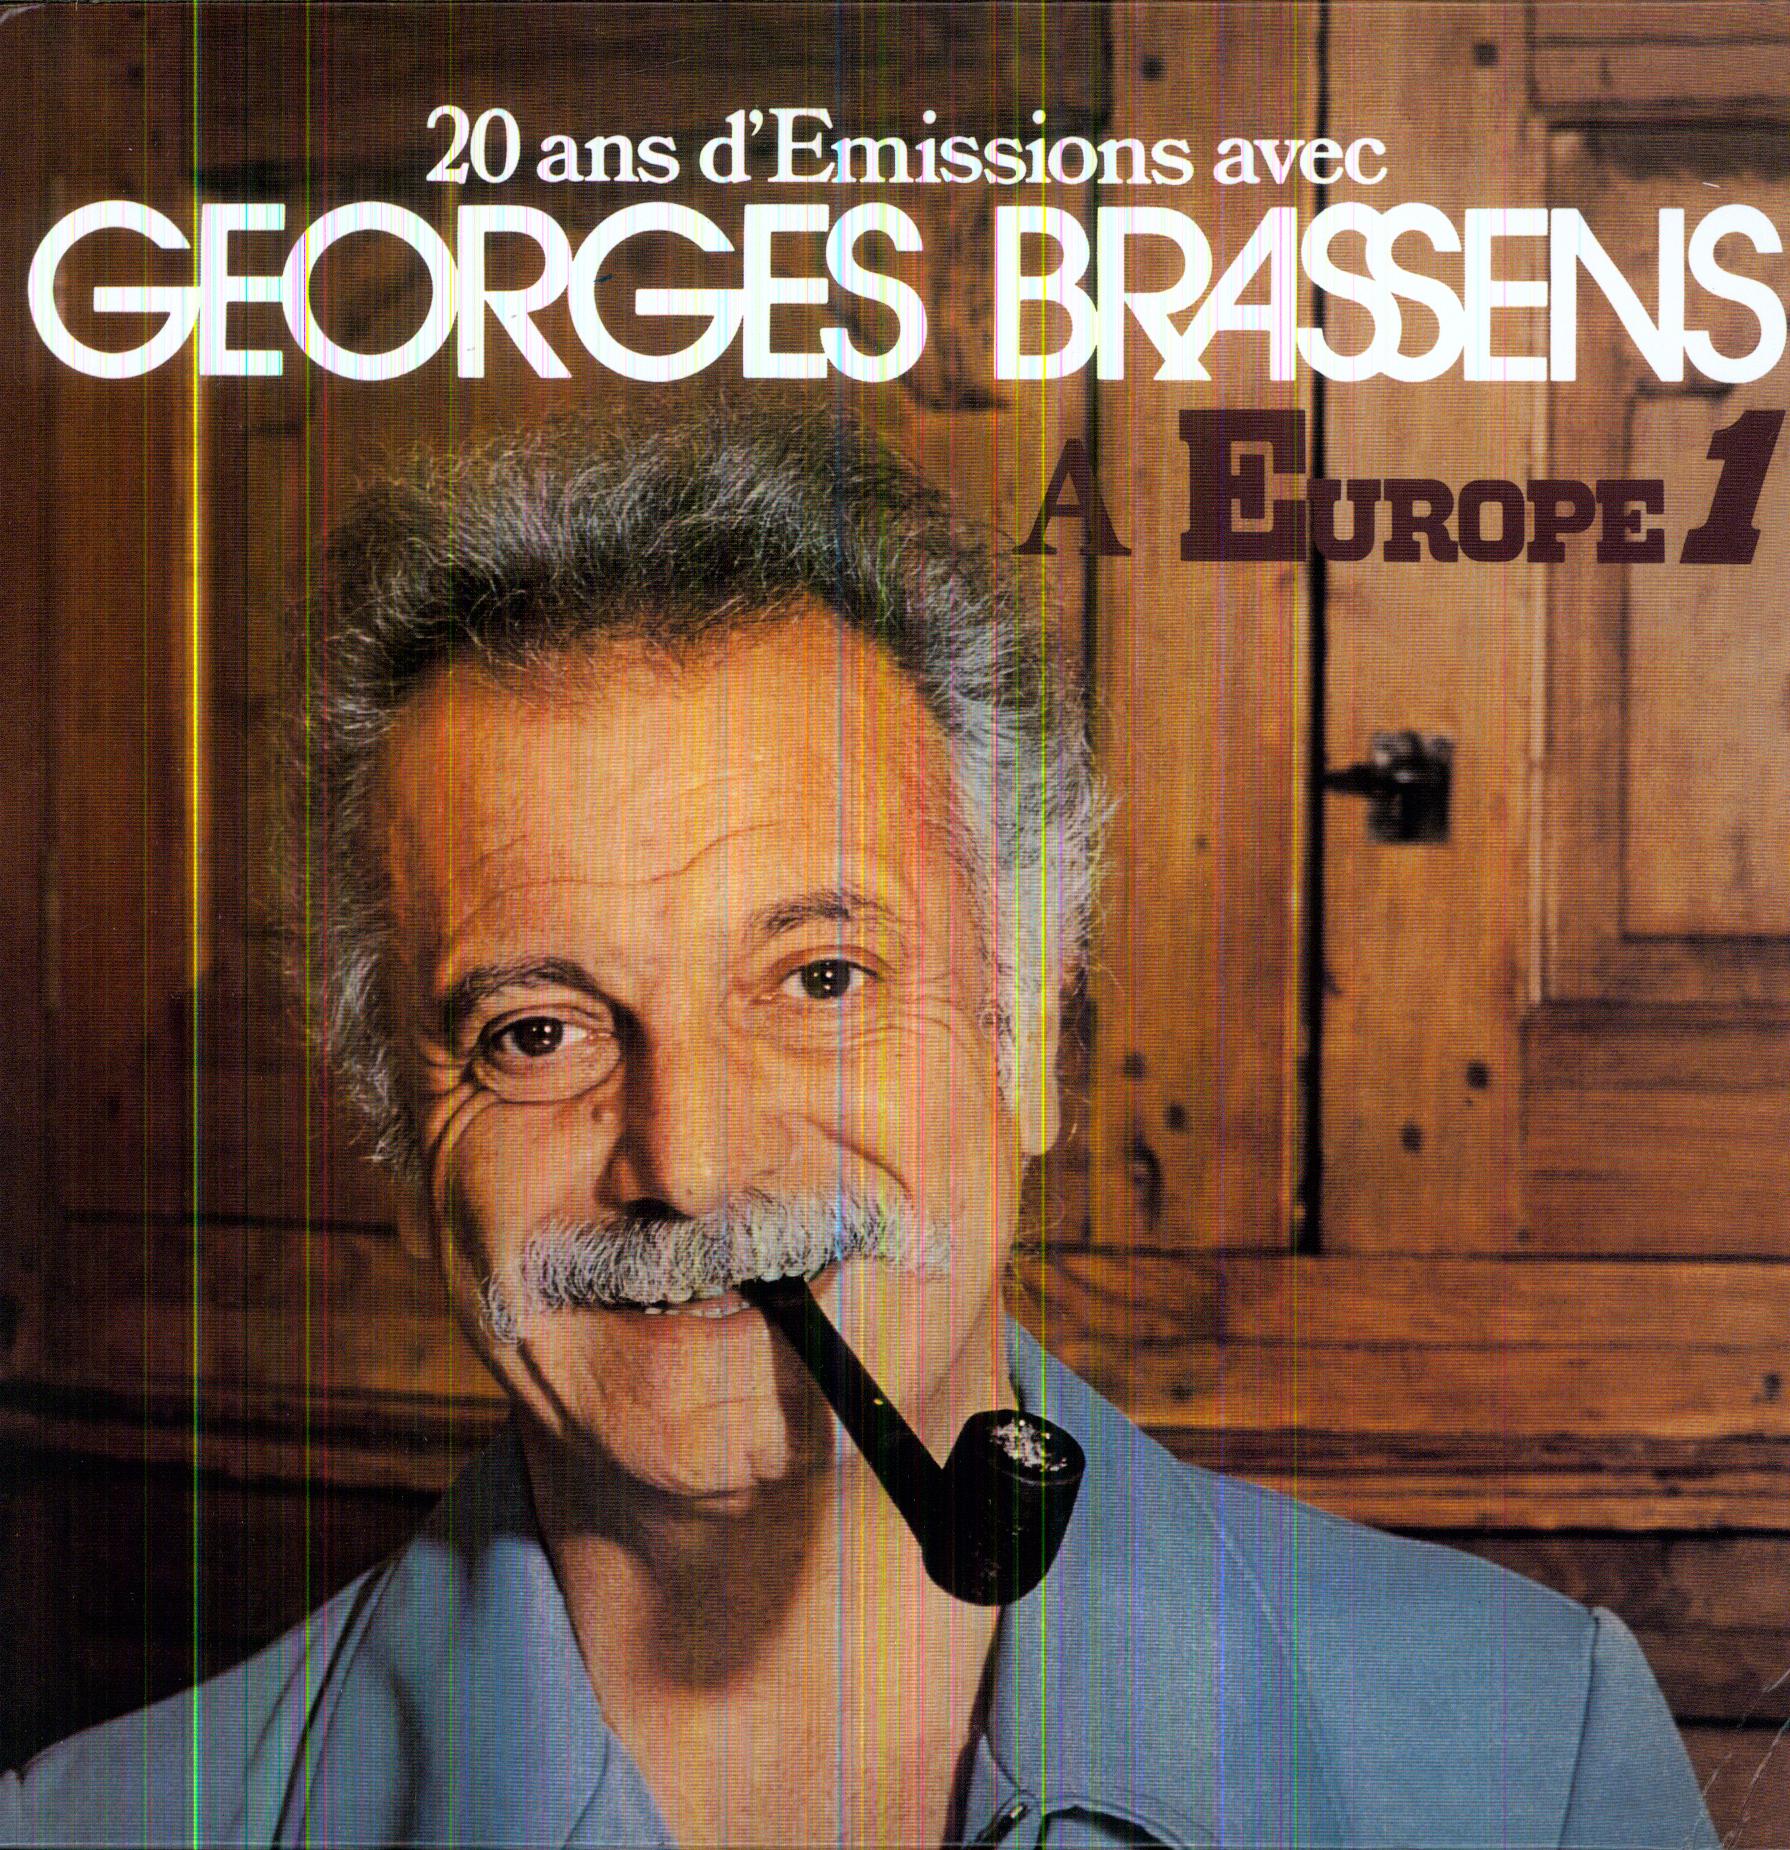 20 ANS D'EMISSIONS DE GEORGES BRASSENS (FRA)